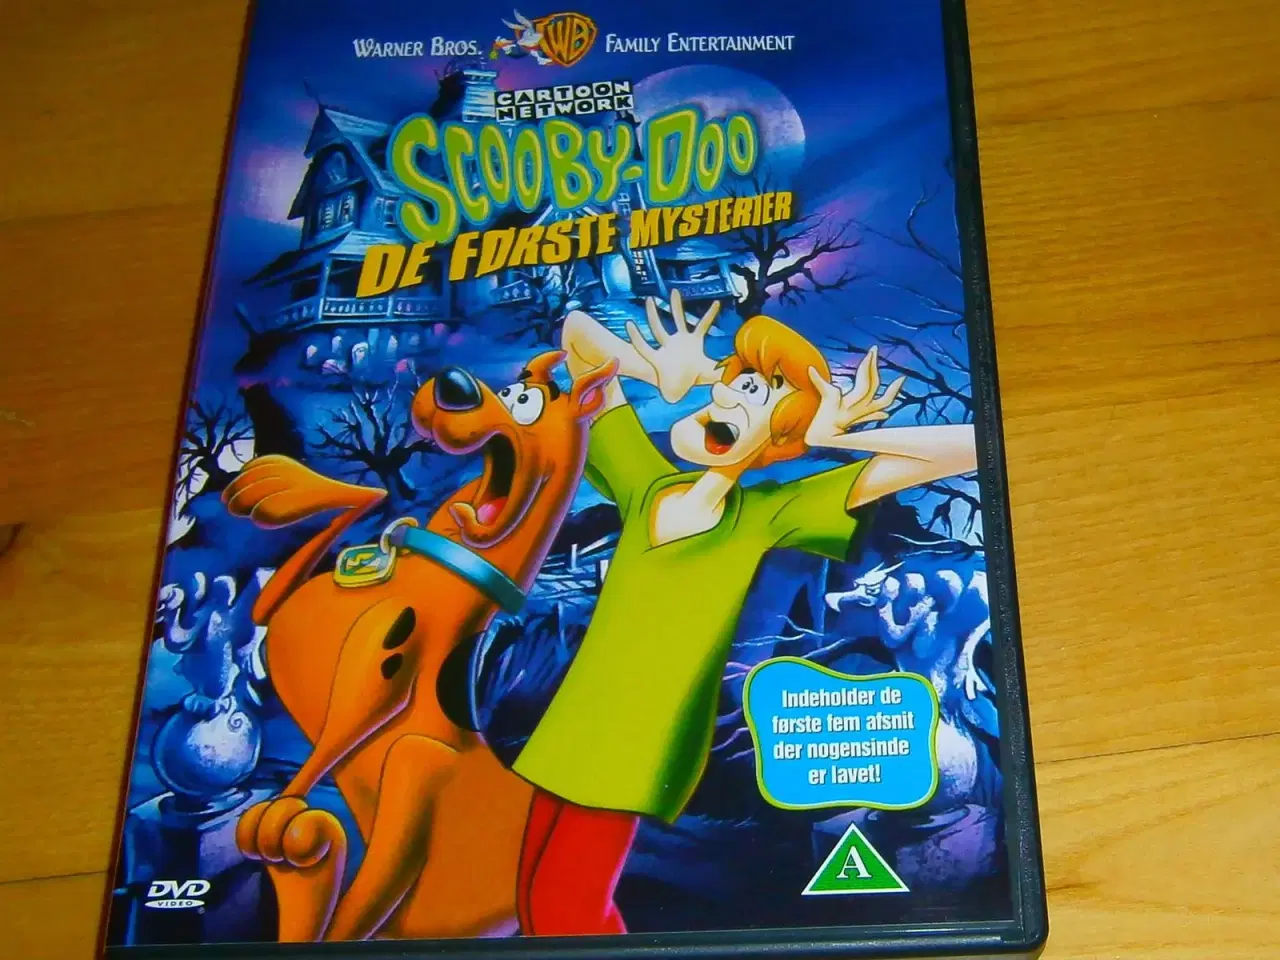 Billede 2 - DVD: Scooby-Doo